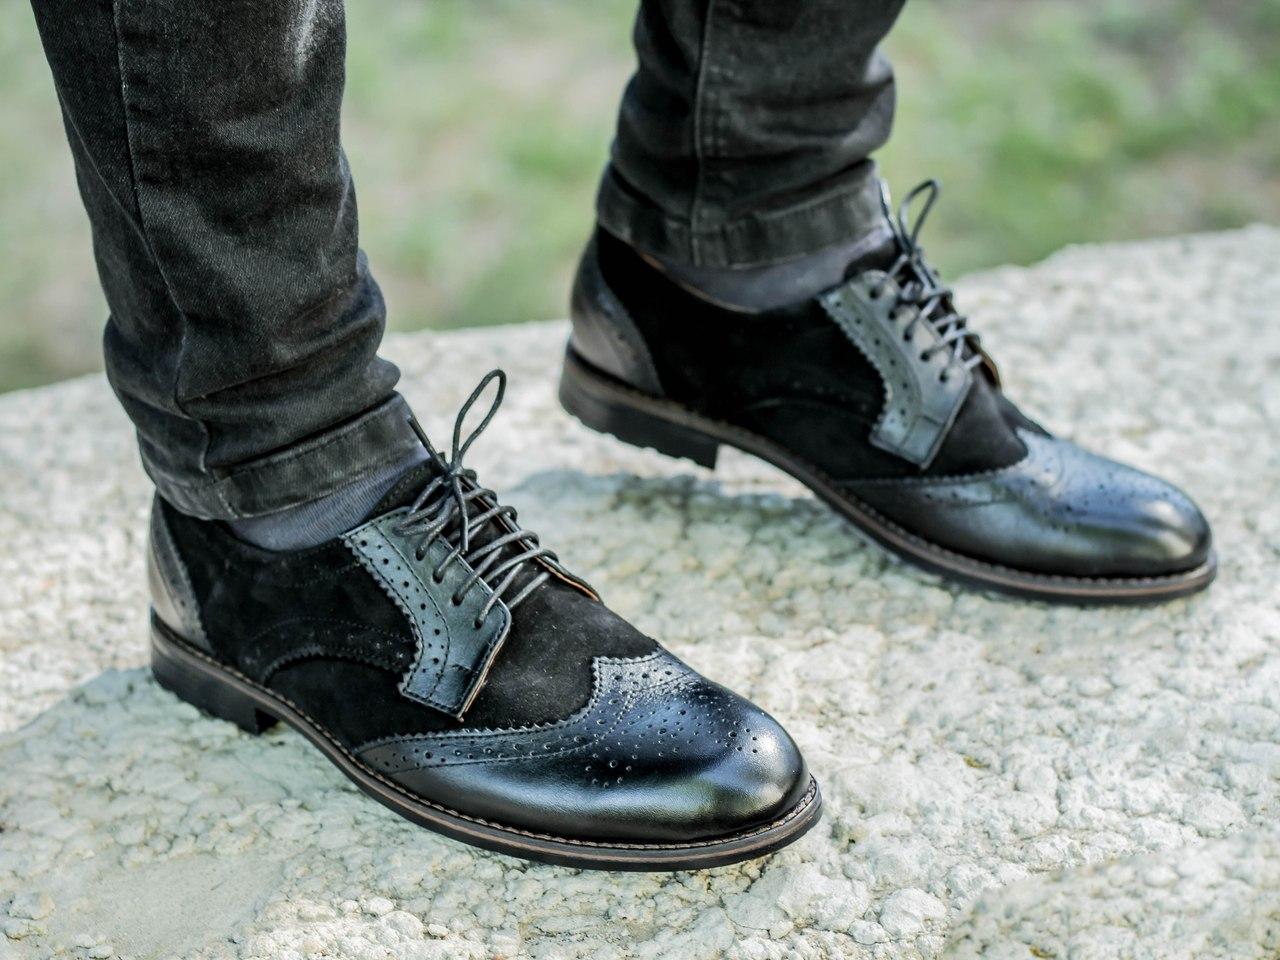 Мужская обувь f. Klondike ботинки Броги. Avva обувь Броги мужские. Мужские кожаные Tufli 2020. Ботинки Оксфорд брогги высокие.